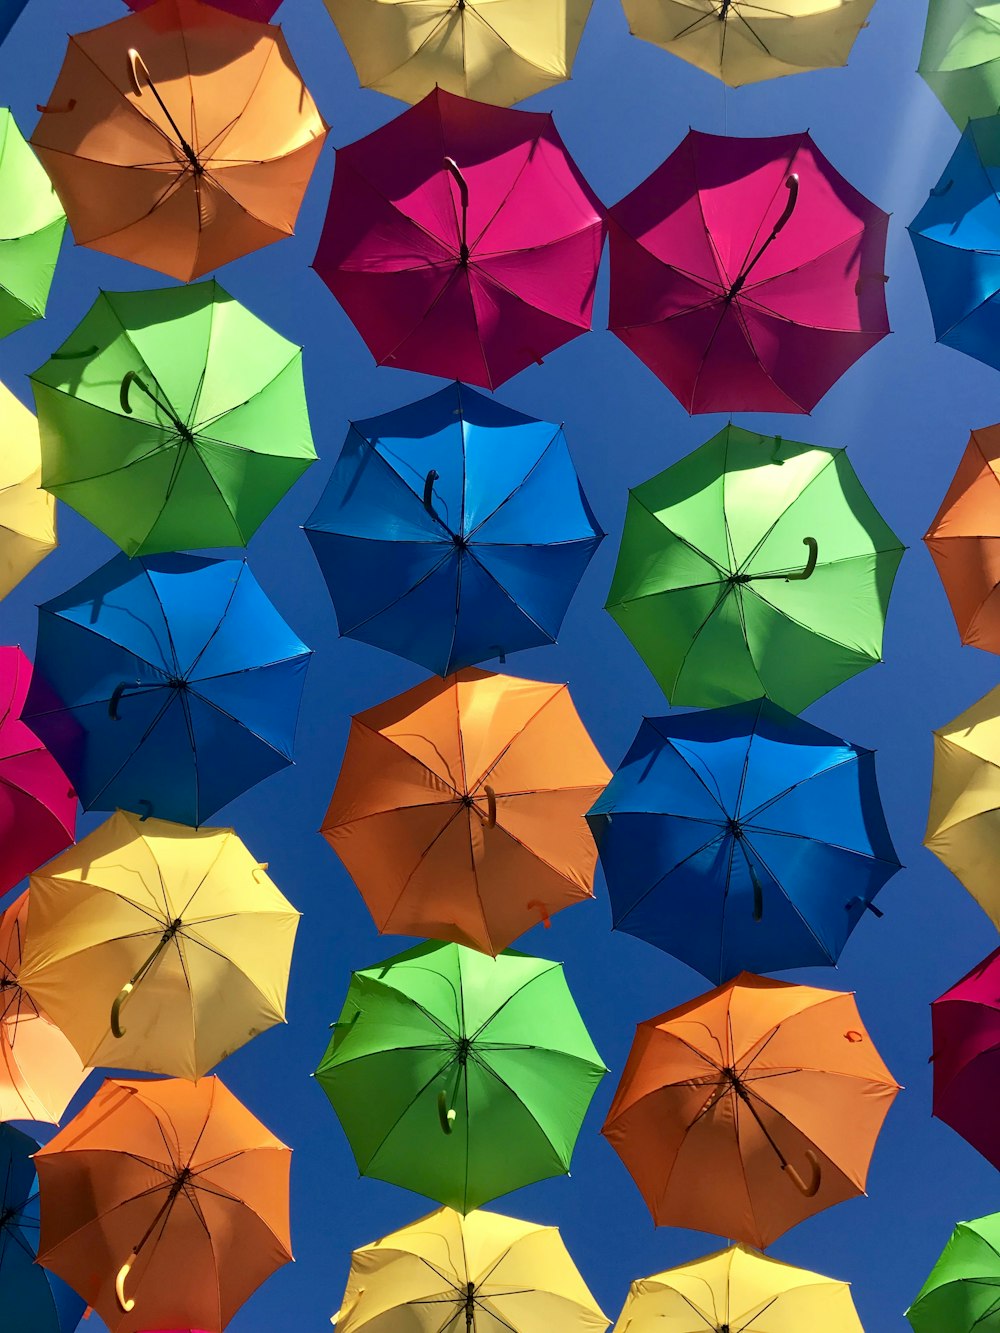 모듬 된 색상의 우산